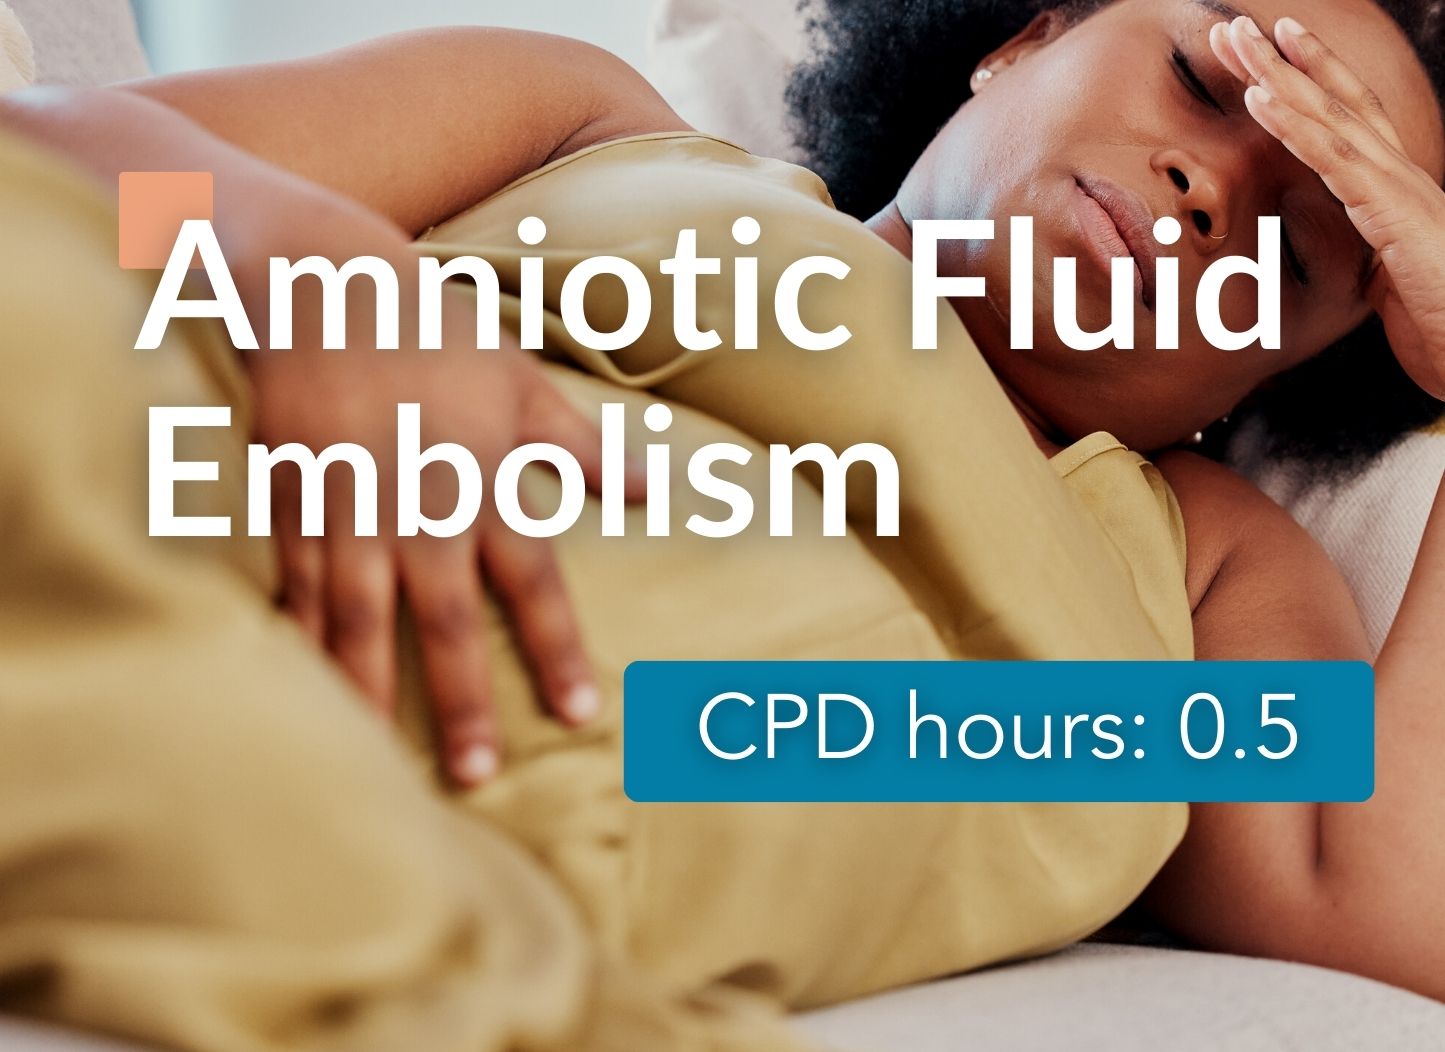 Amniotic Fluid Embolism